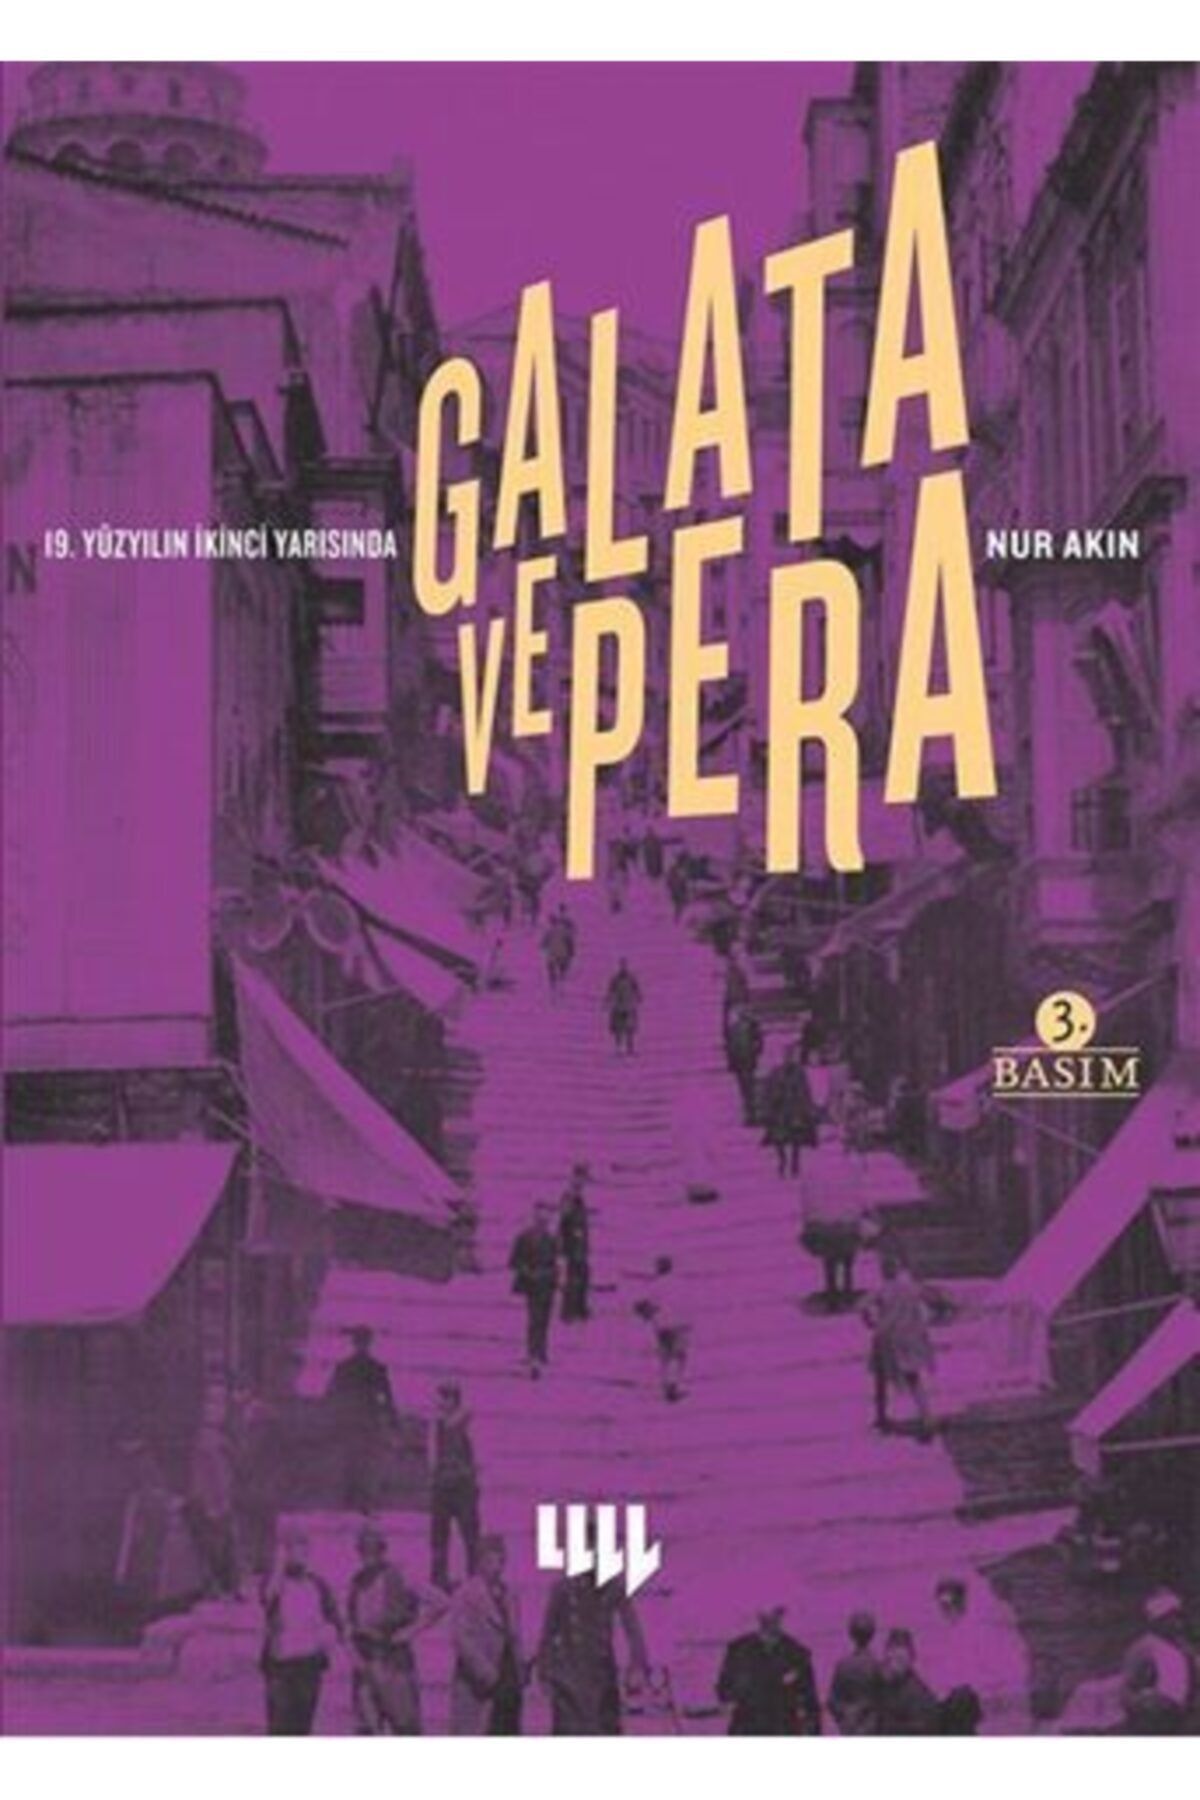 Literatür Yayınları 19. Yüzyılın İkinci Yarısında Galata ve Pera